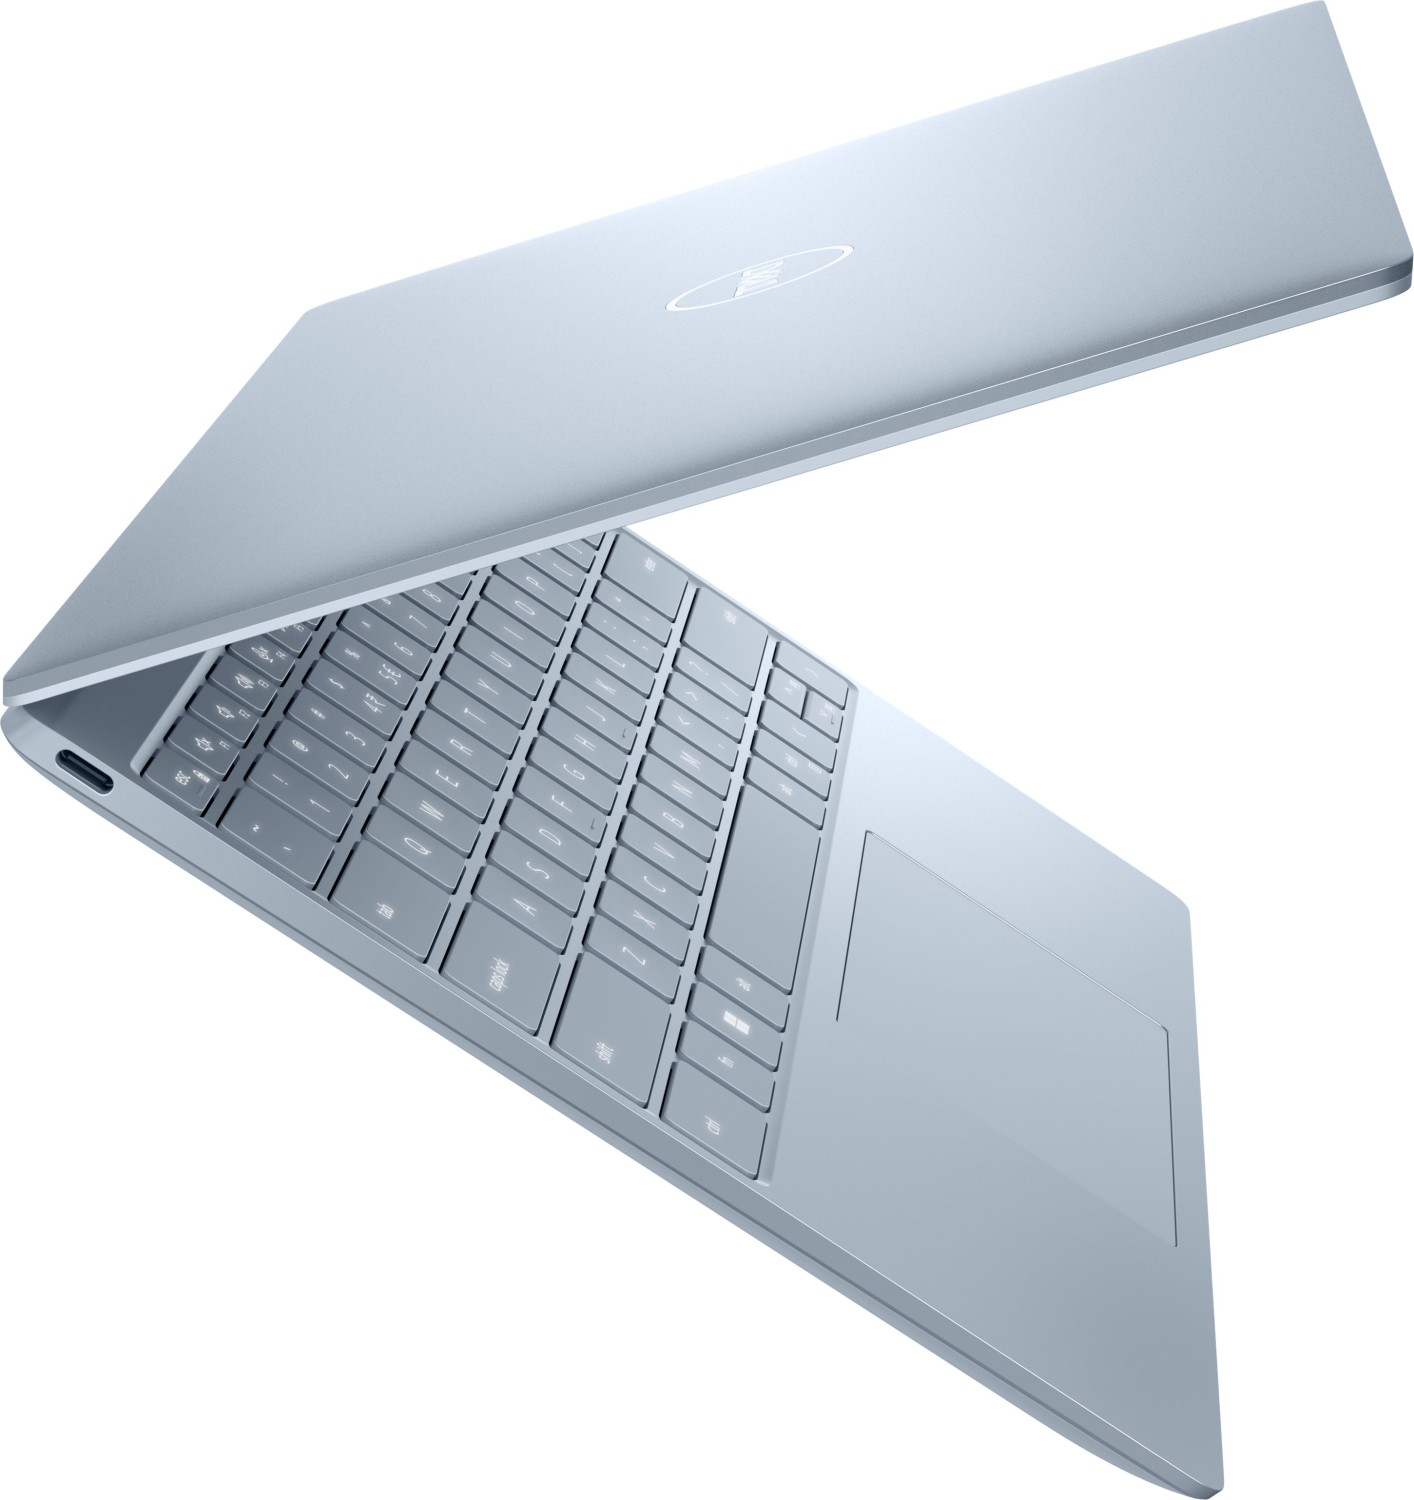 Купить Ноутбук Dell XPS 13 9315 (XPS9315-7725SKY-PUS) - ITMag